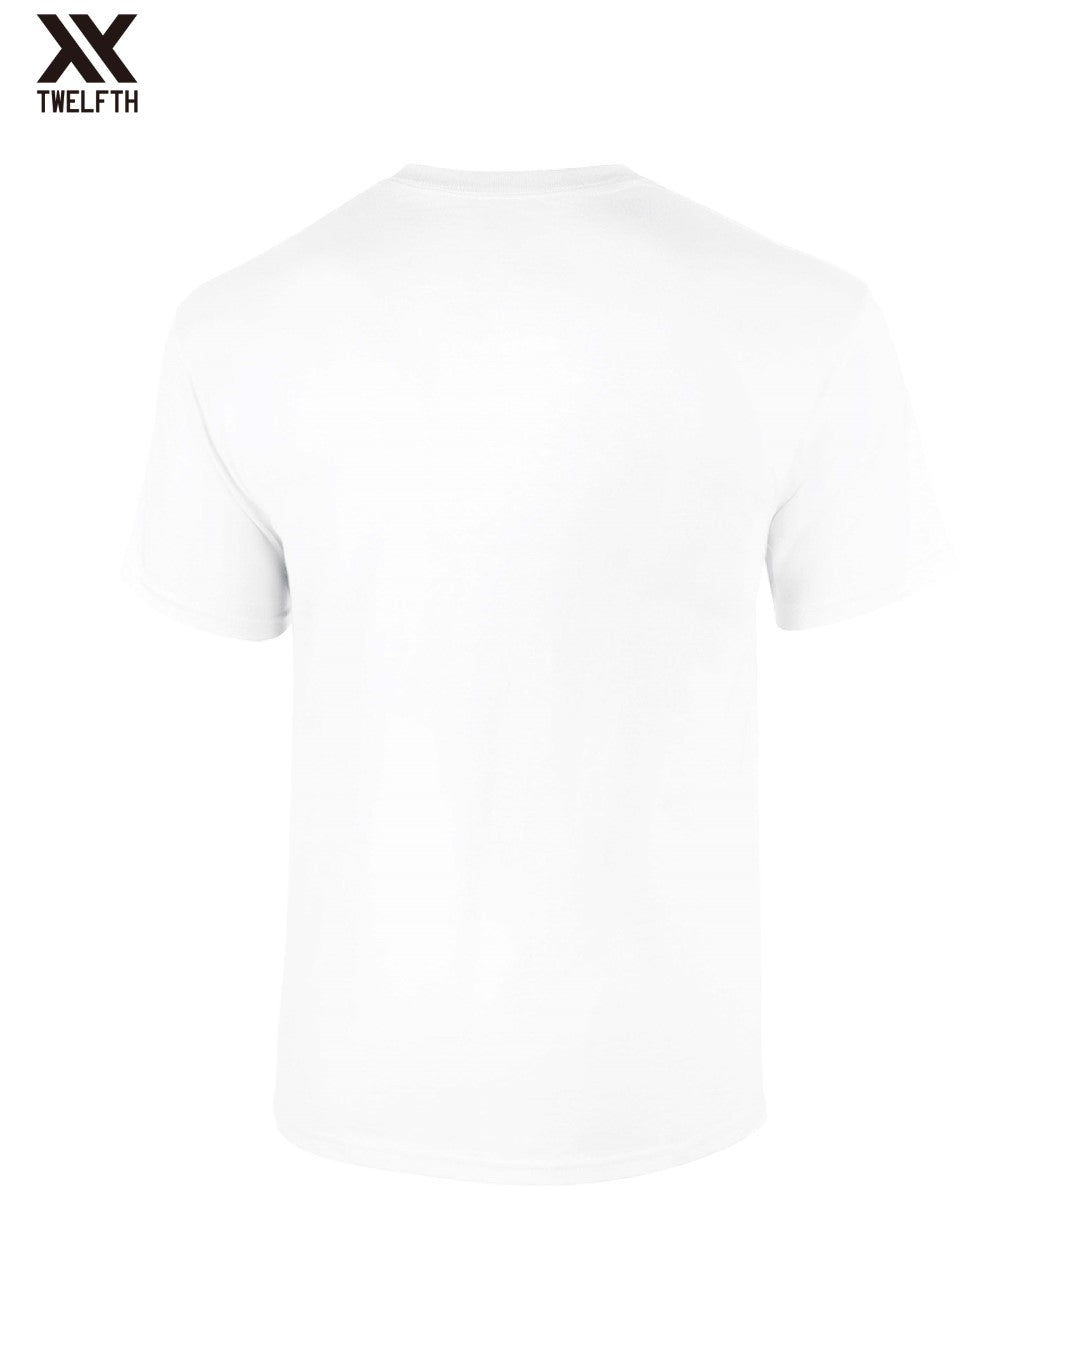 Boca Juniors Crest T-Shirt - Mens